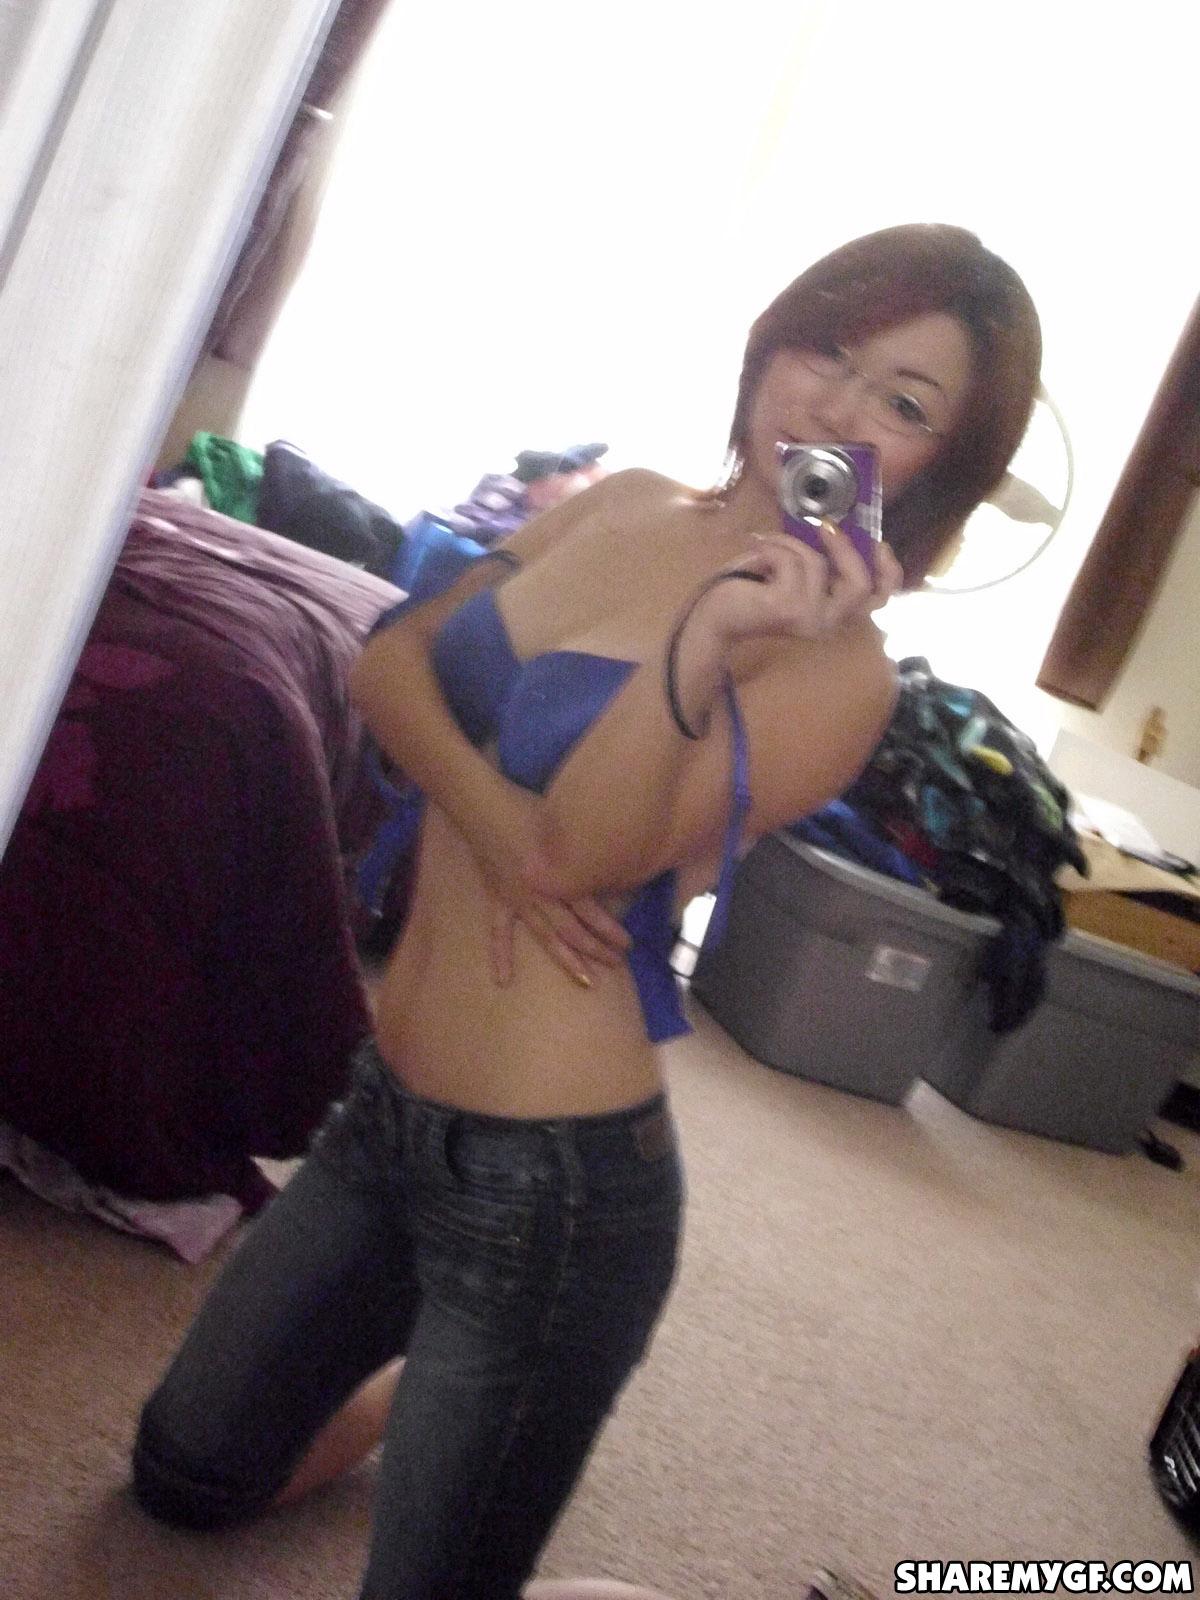 Asian coed shares hot selfies taken in her dorm room #60795839